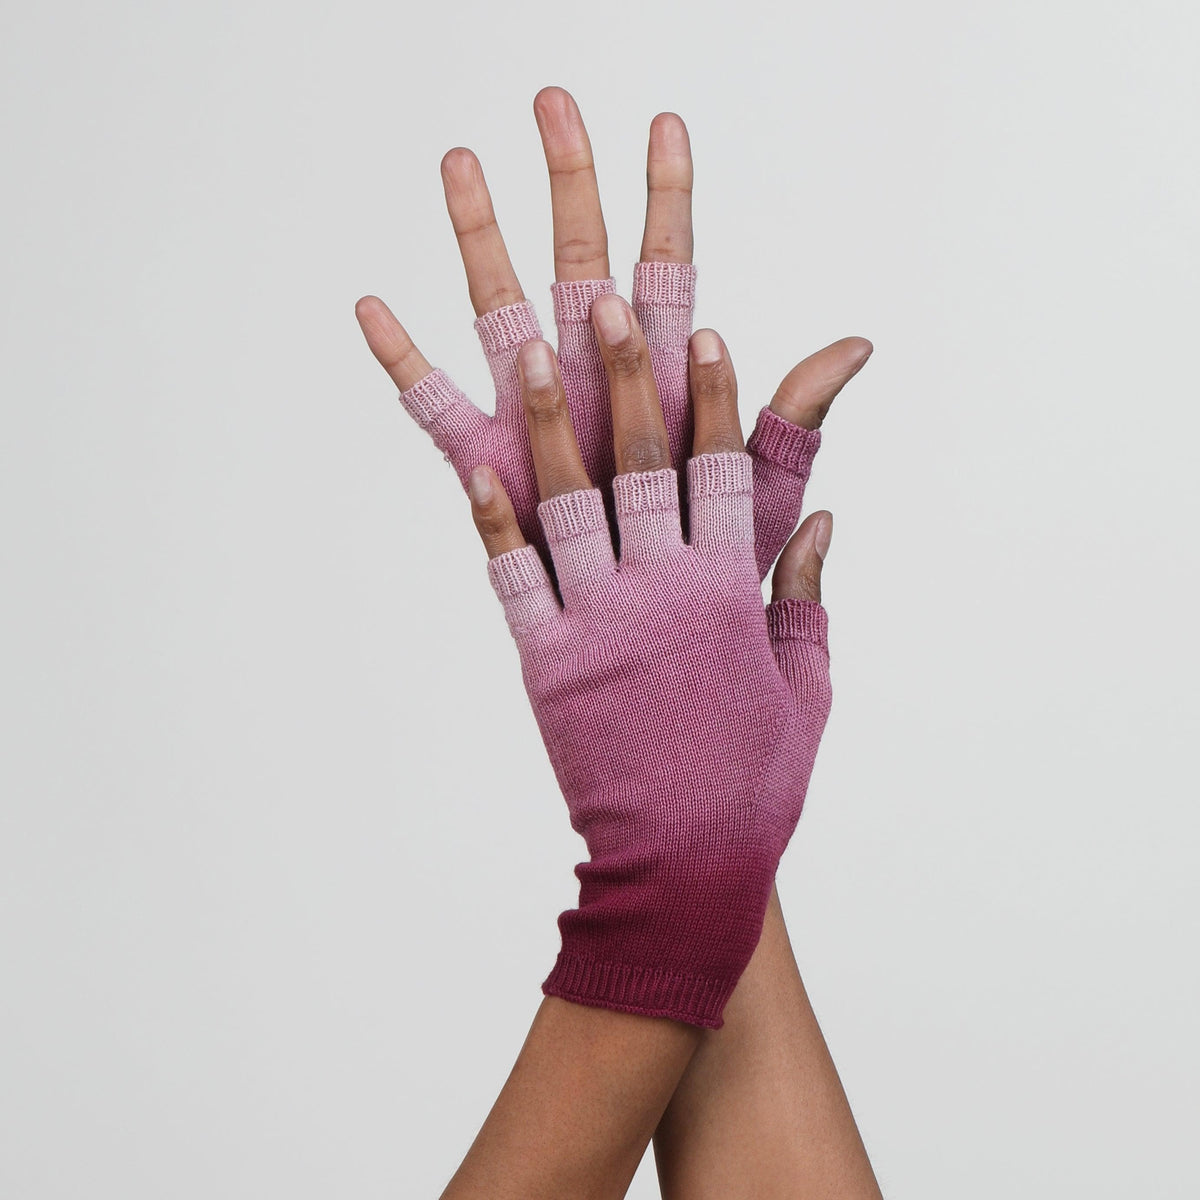 Red Dip Dye Fingerless Gloves by Seymoure Gloves.